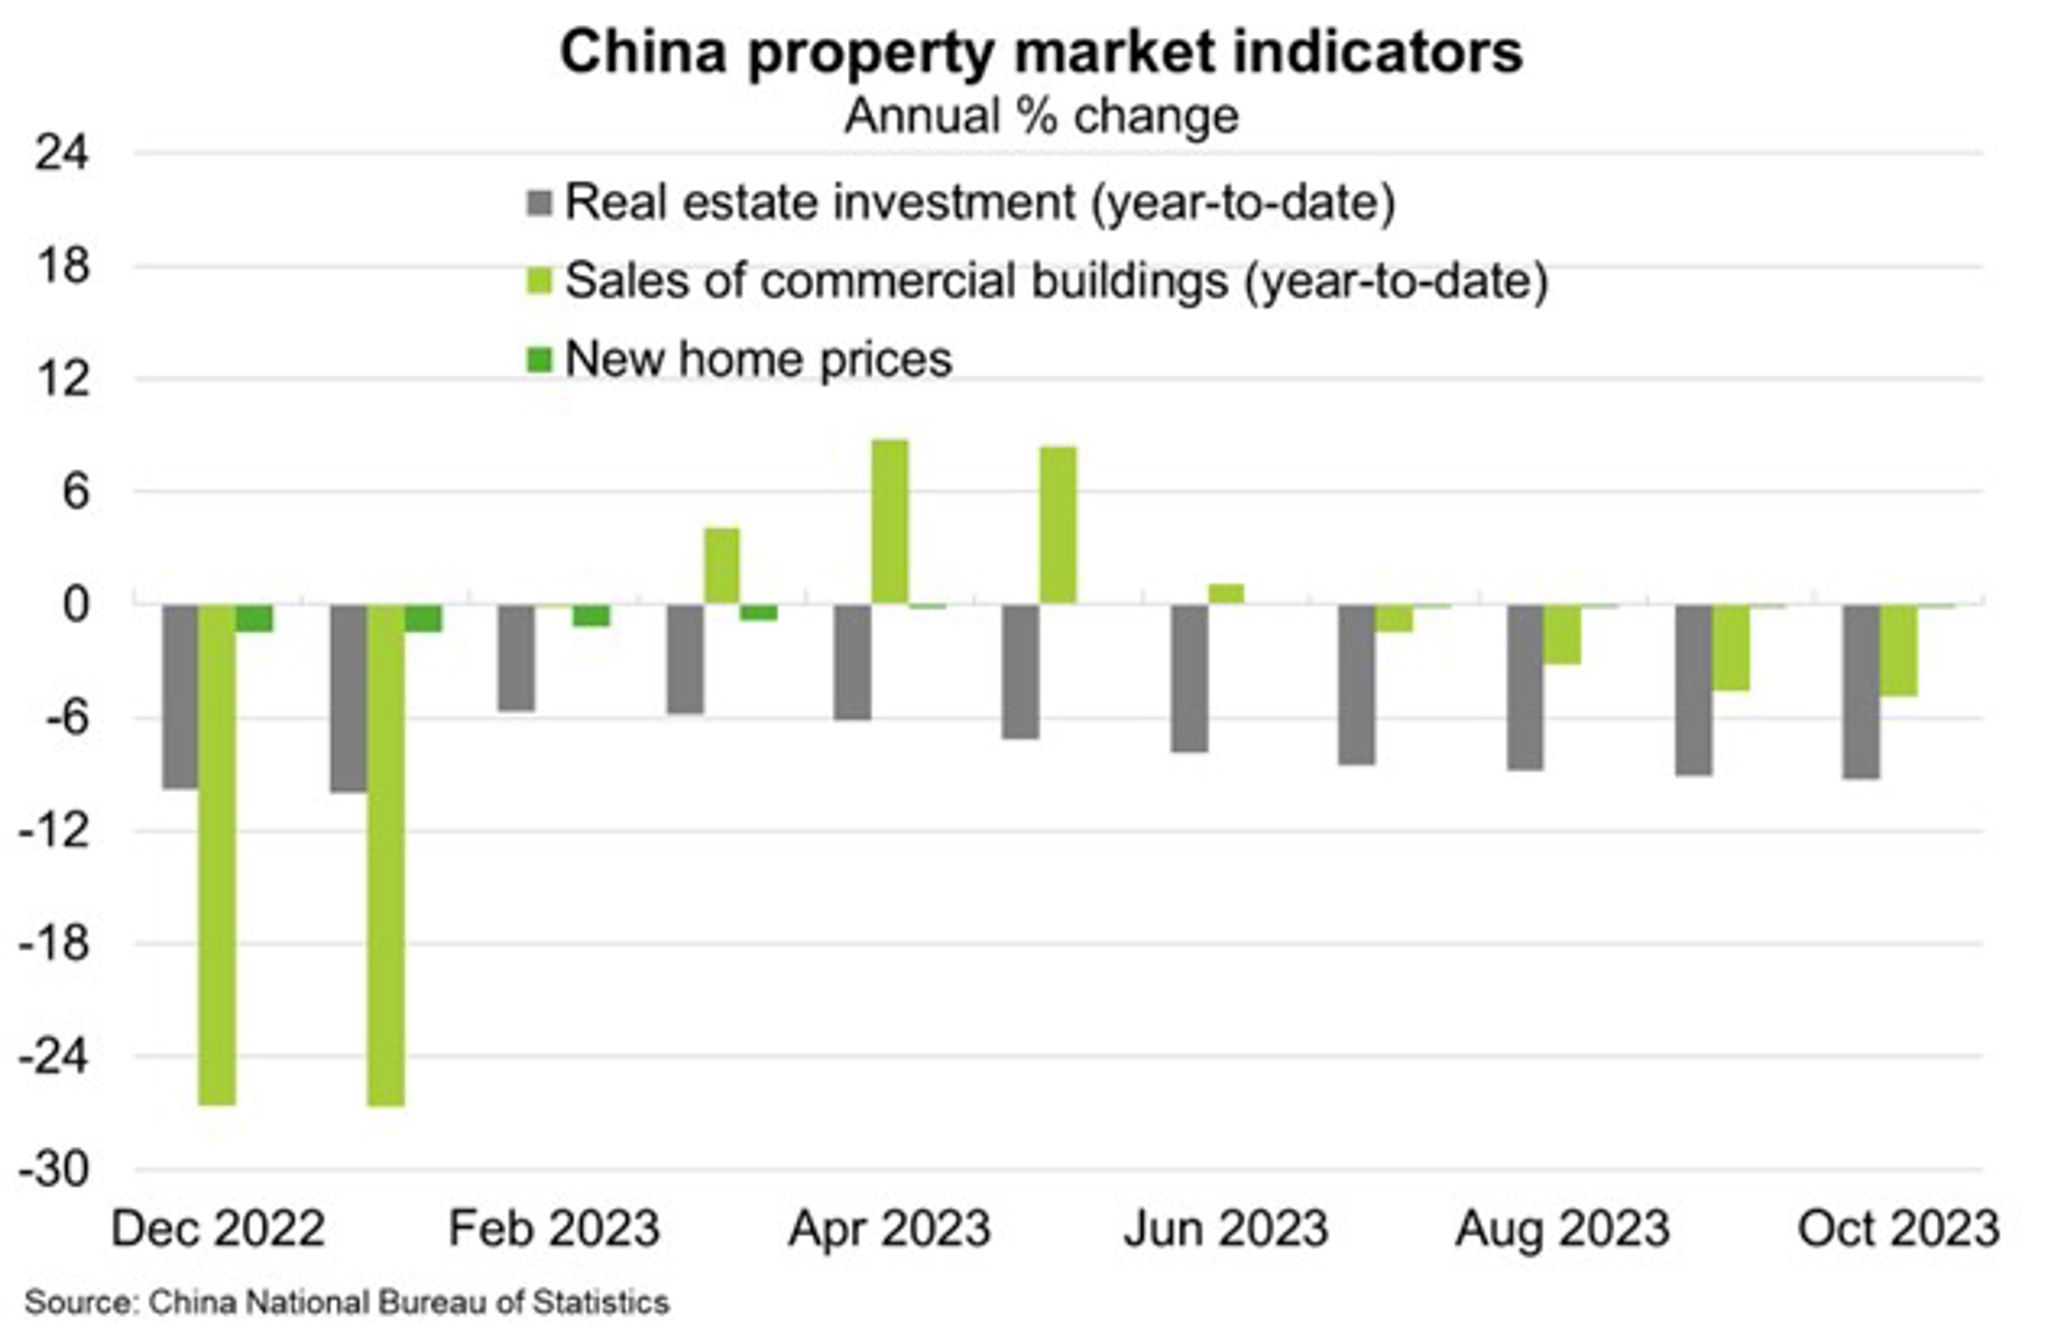 China Property Market Indicators chart